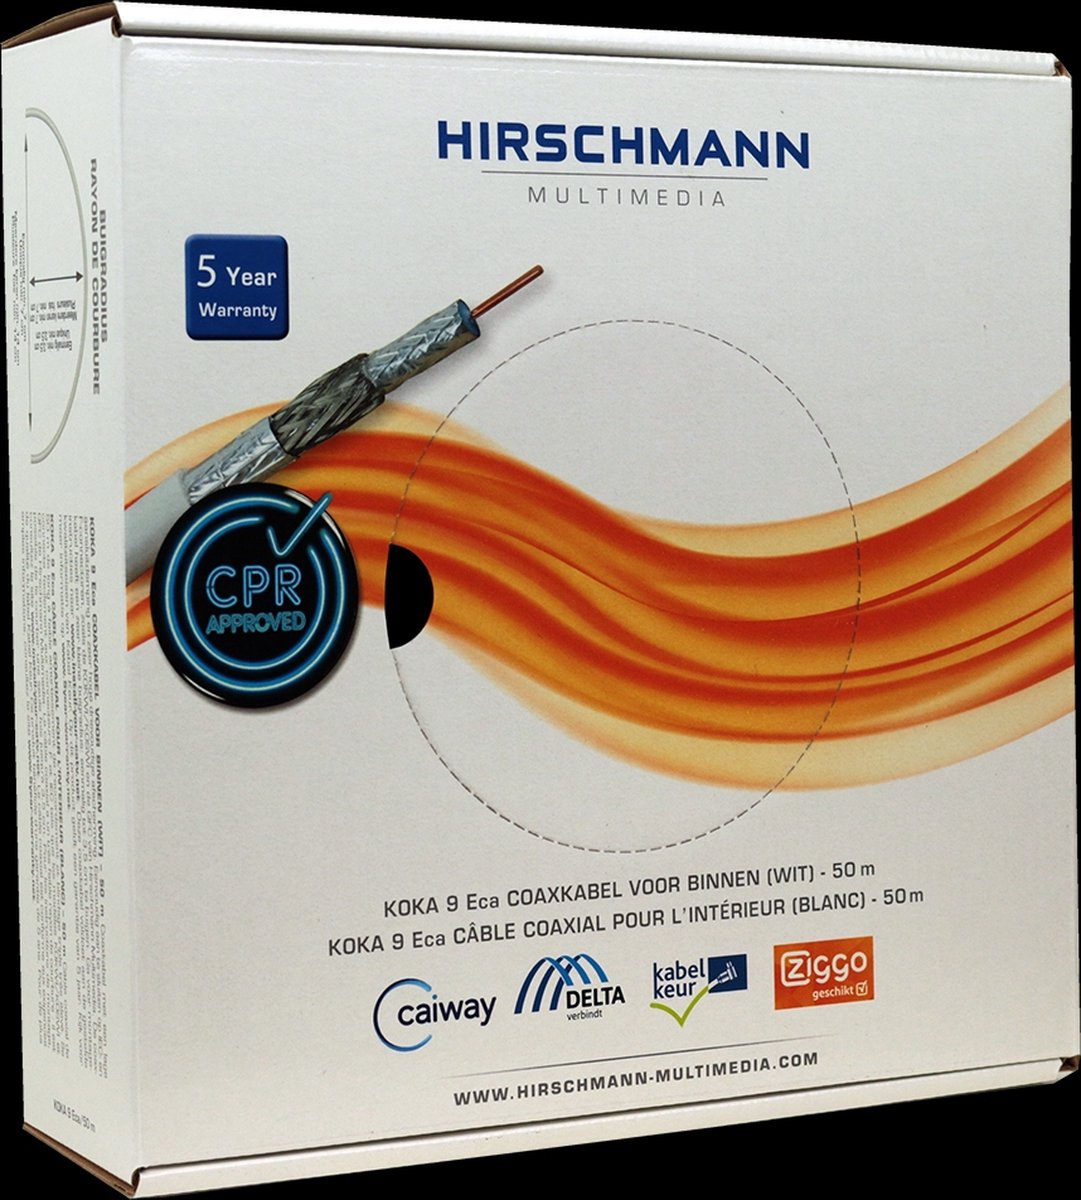 Hirschmann KOKA 9 Eca 4G/LTE proof coaxkabel in doos voor binnen / wit - 50 meter - Hirschmann